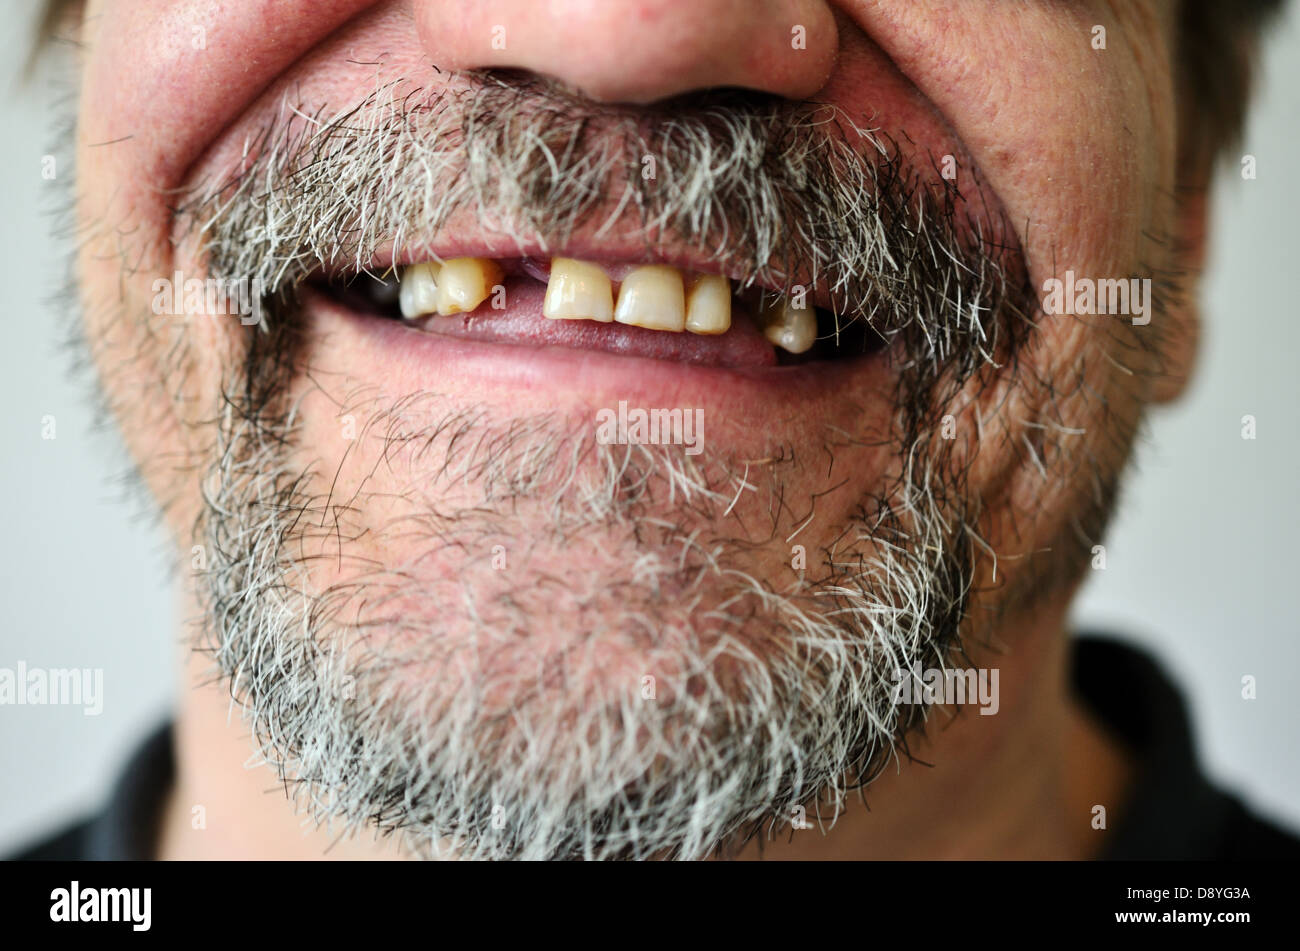 Teil des Gesicht eines Mannes mit einem zahnlosen Lächeln Stockfoto